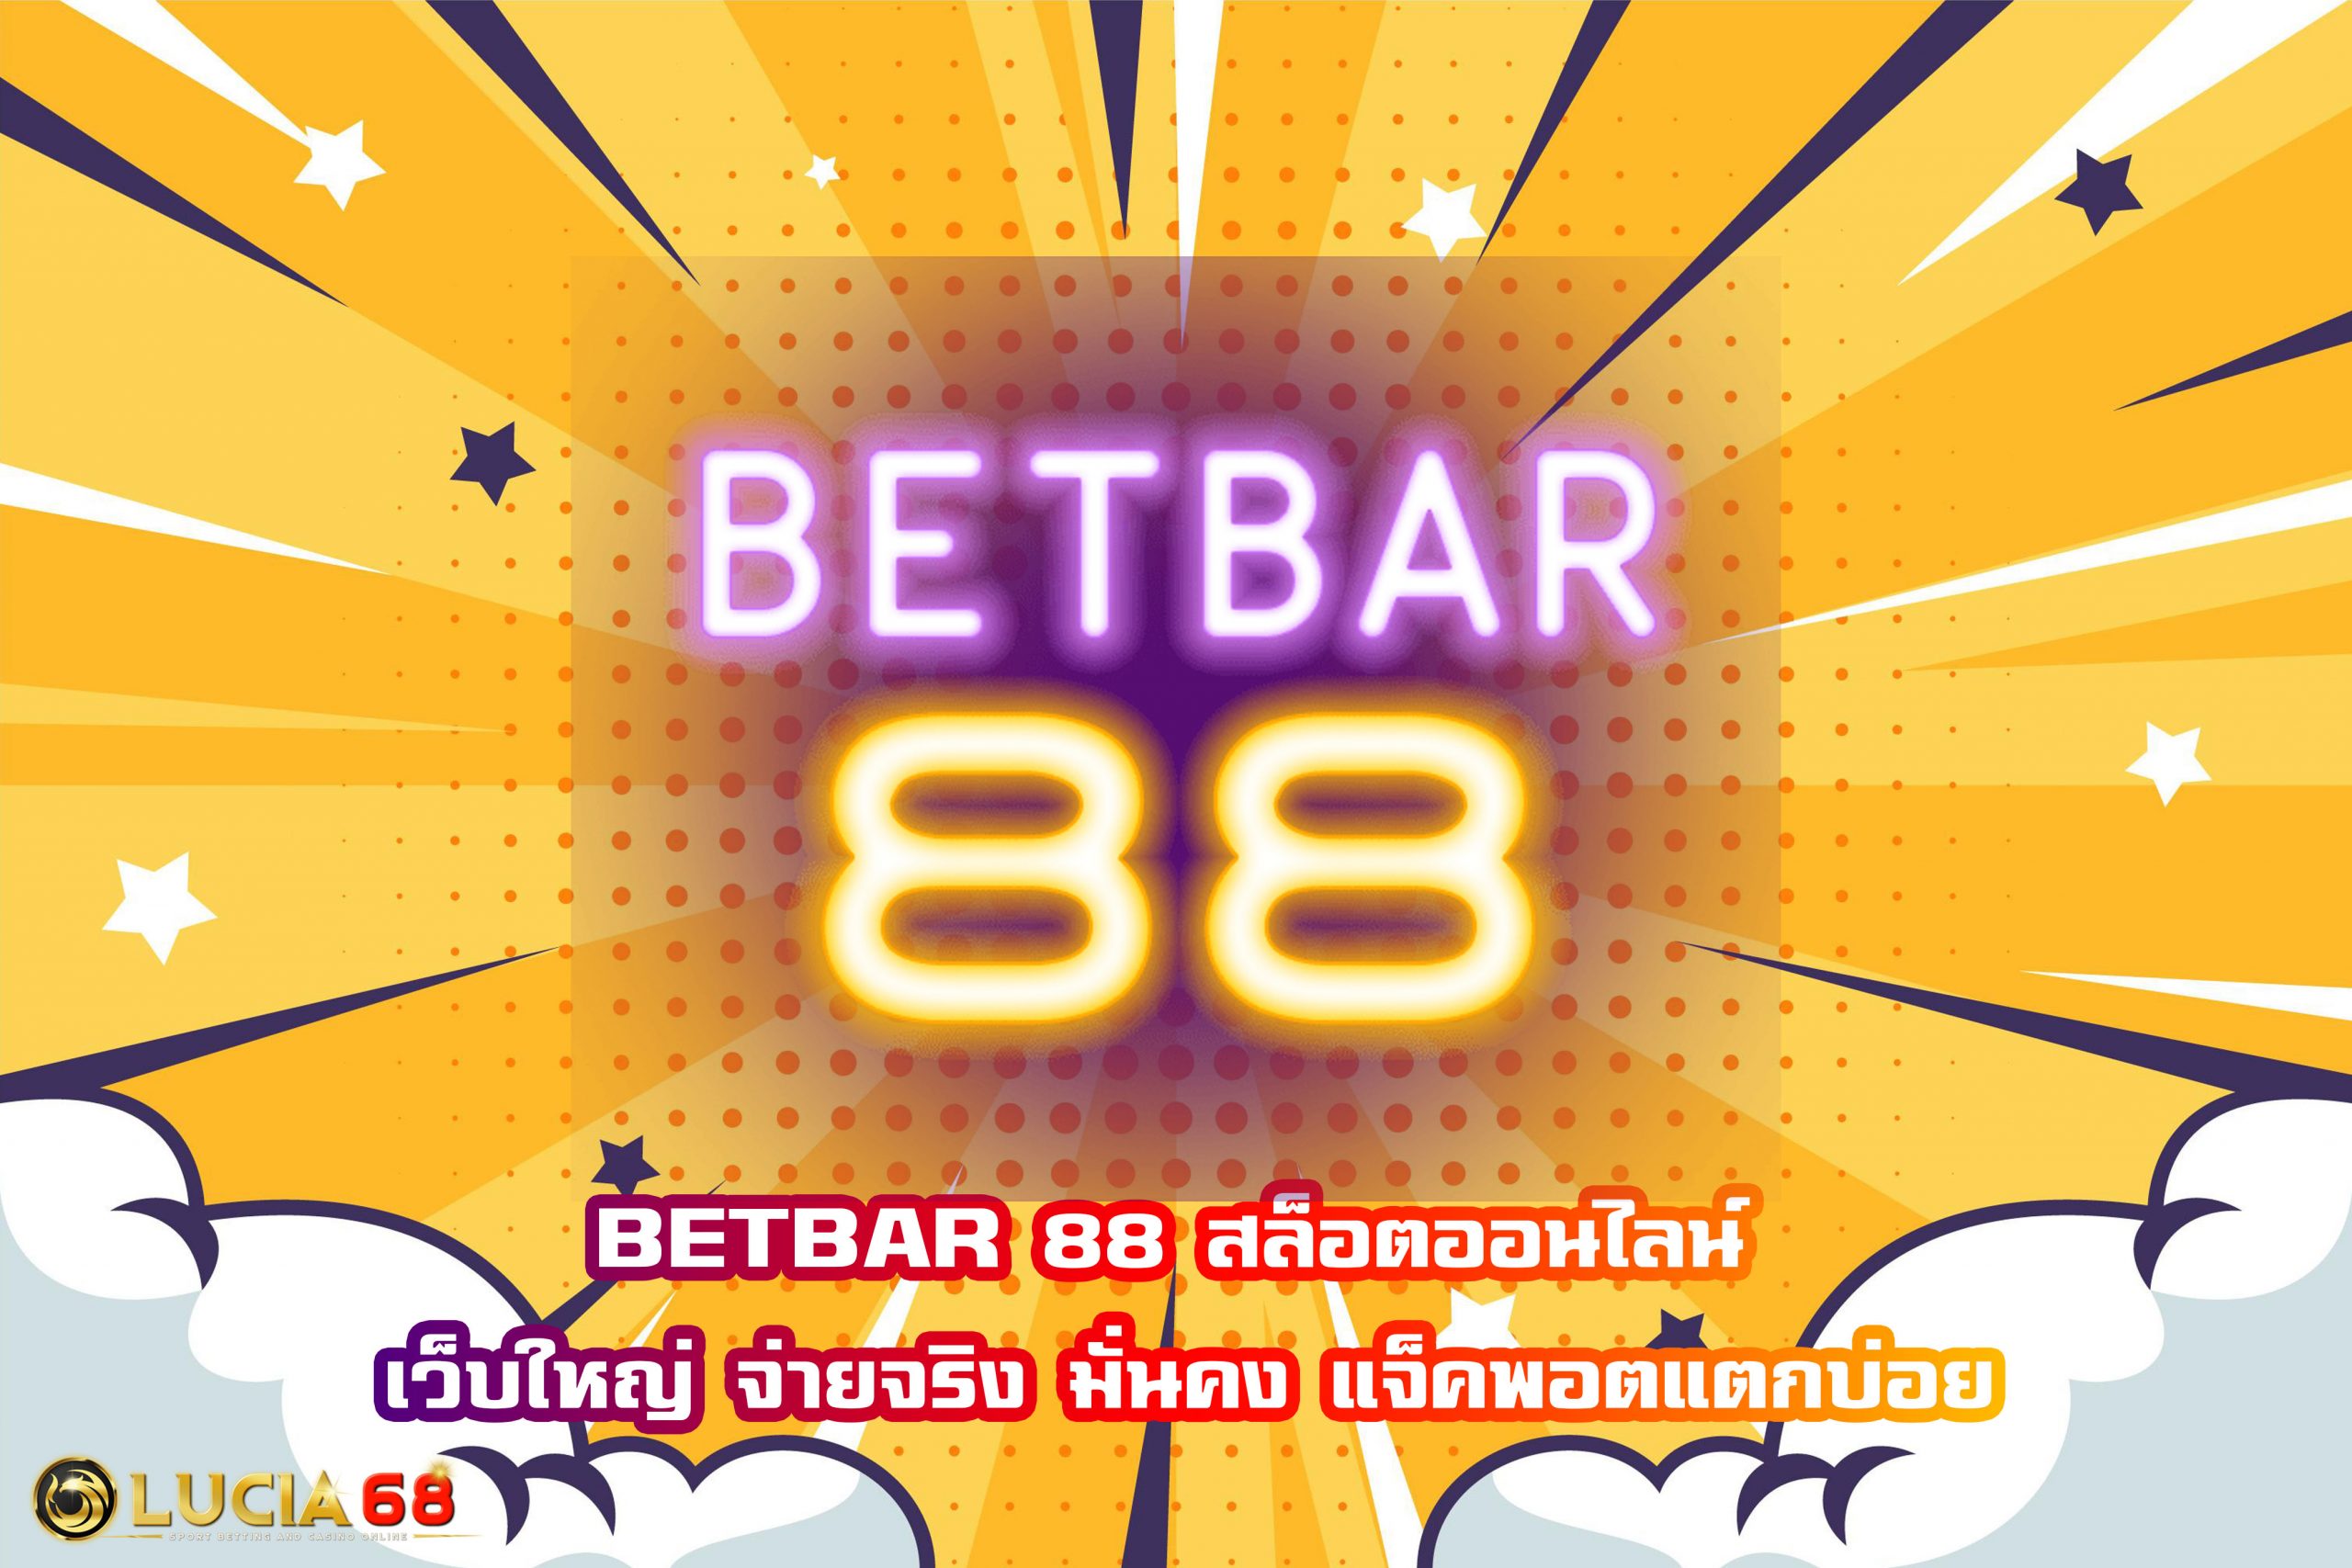 BETBAR 88 สล็อตออนไลน์ เว็บใหญ่ จ่ายจริง มั่นคง แจ็คพอตแตกบ่อย